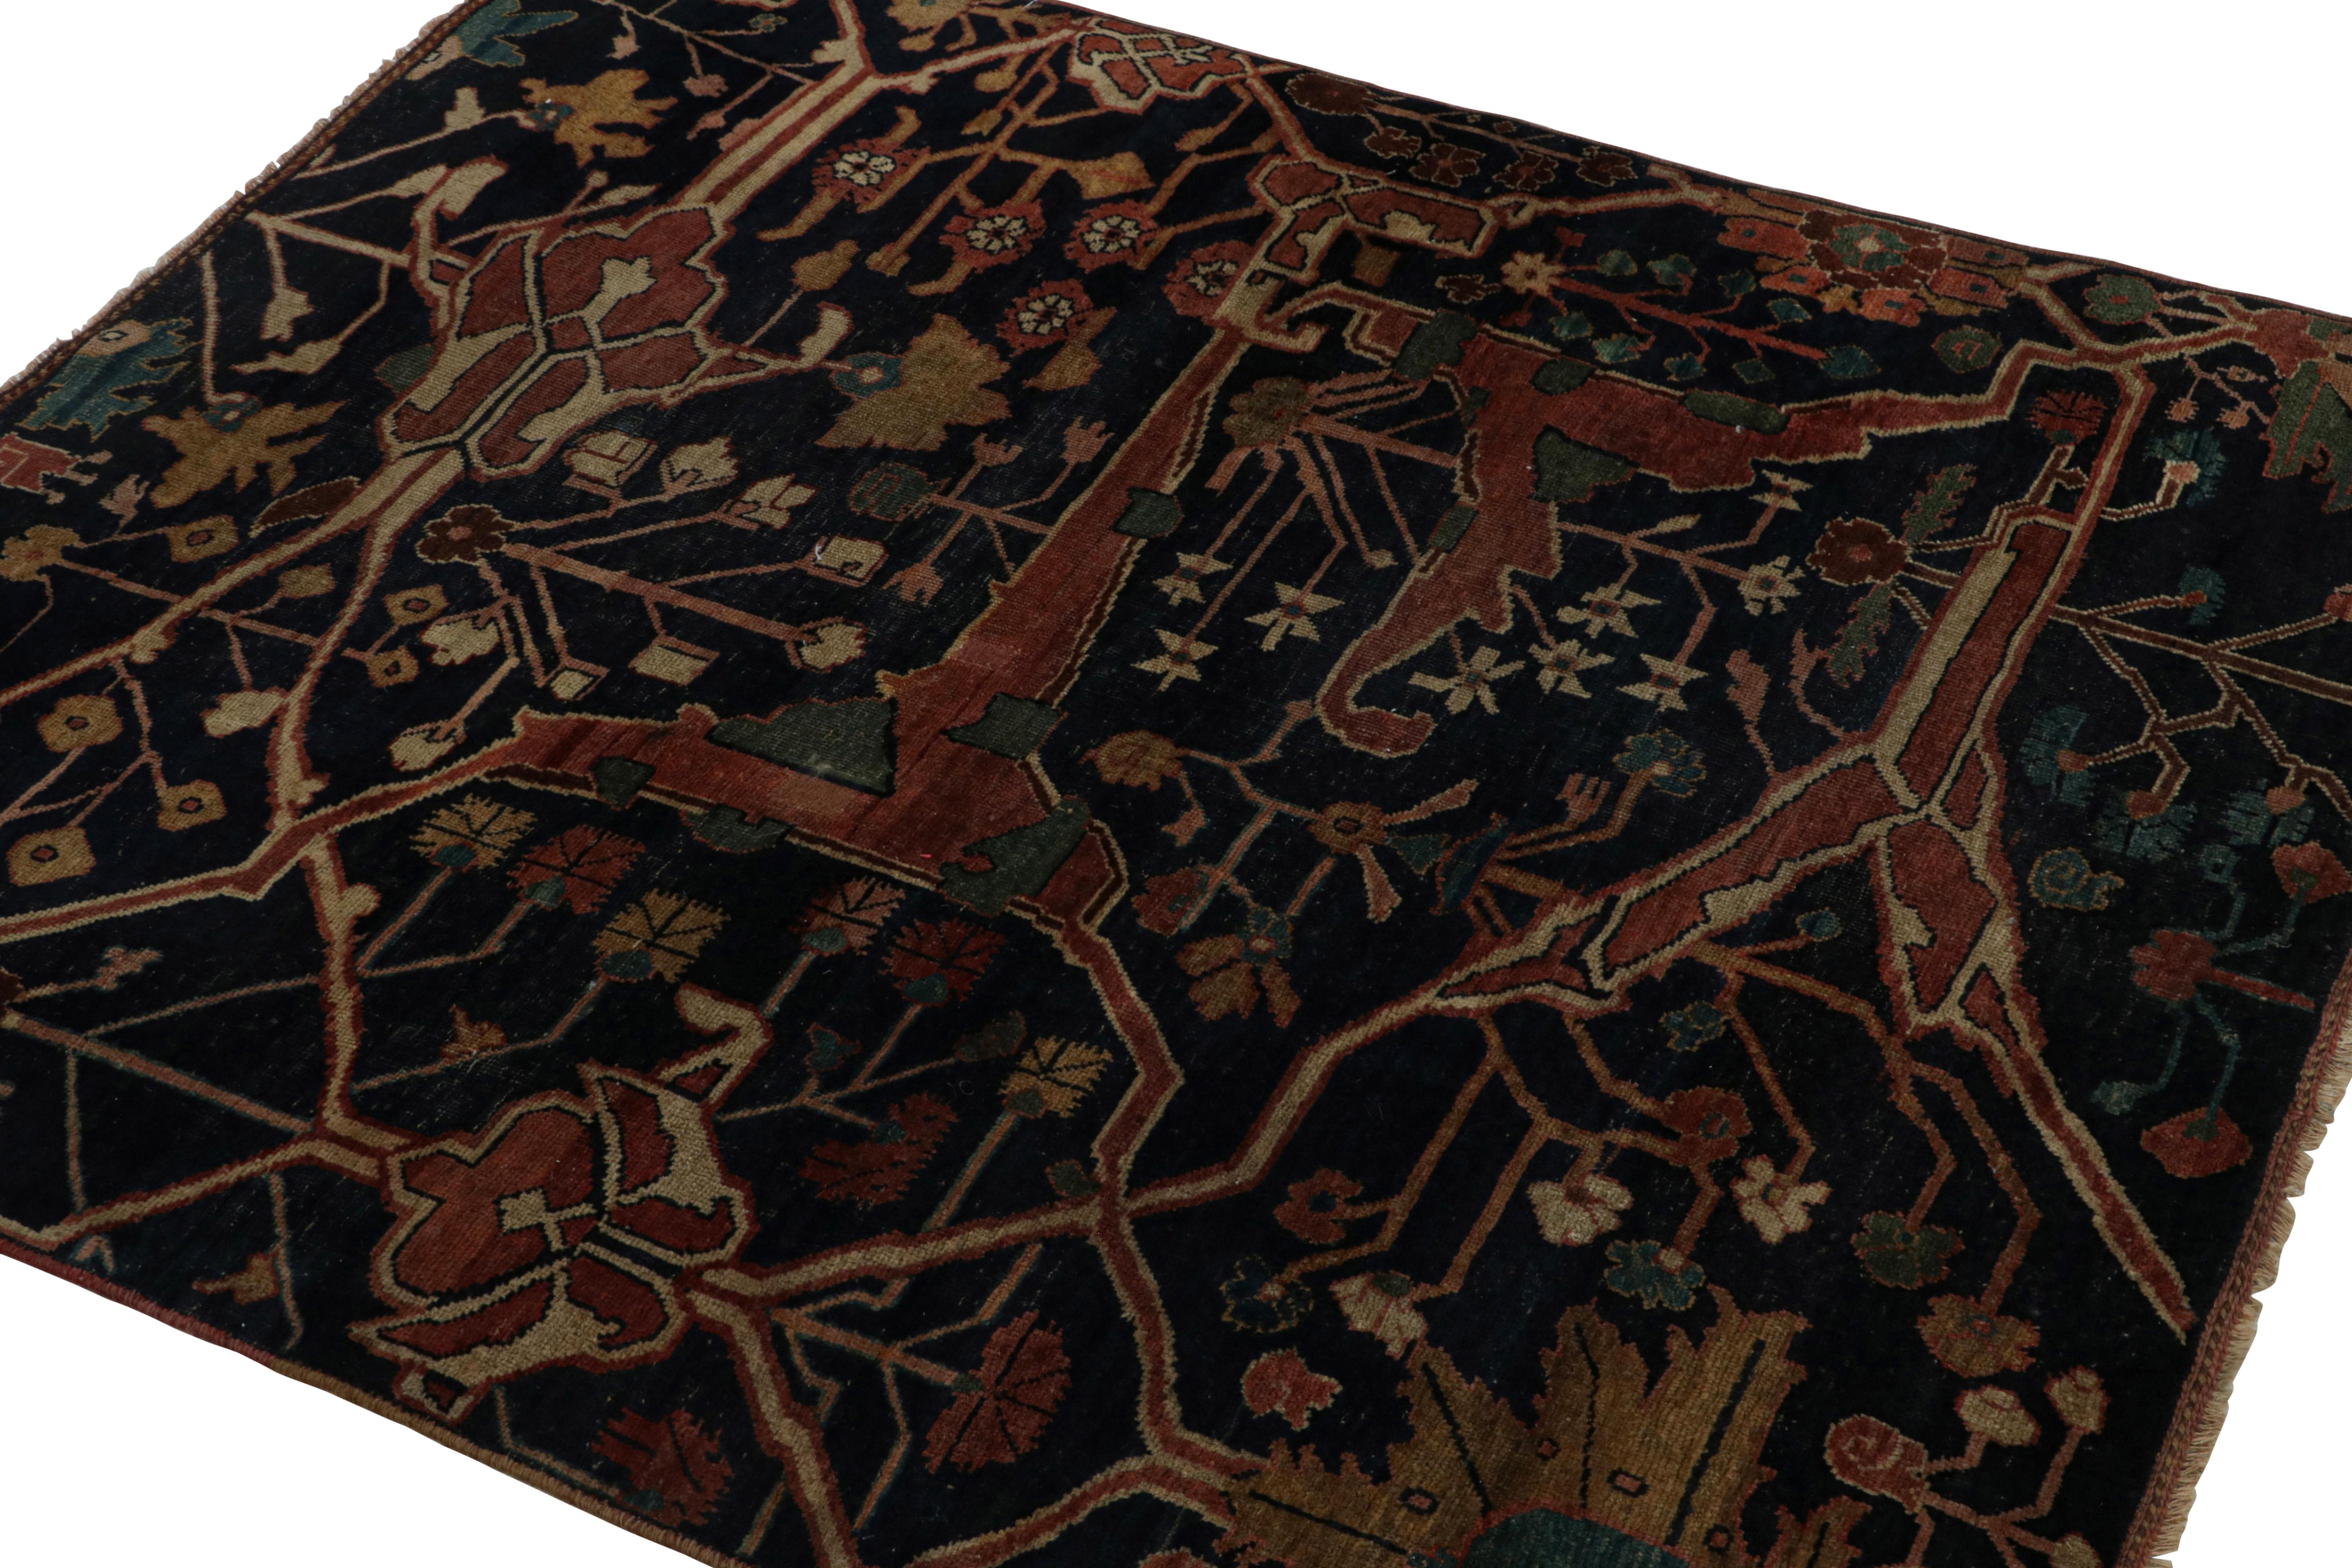 Noué à la main en laine vers 1890-1900, ce tapis persan antique 4x5 Bidjar est une nouvelle addition à la collection Vintage & Antique de Rug & Kilim.

Sur le Design :

Fabriqué par les tisserands de la tribu kurde de Bidjar, ce tapis fait appel à